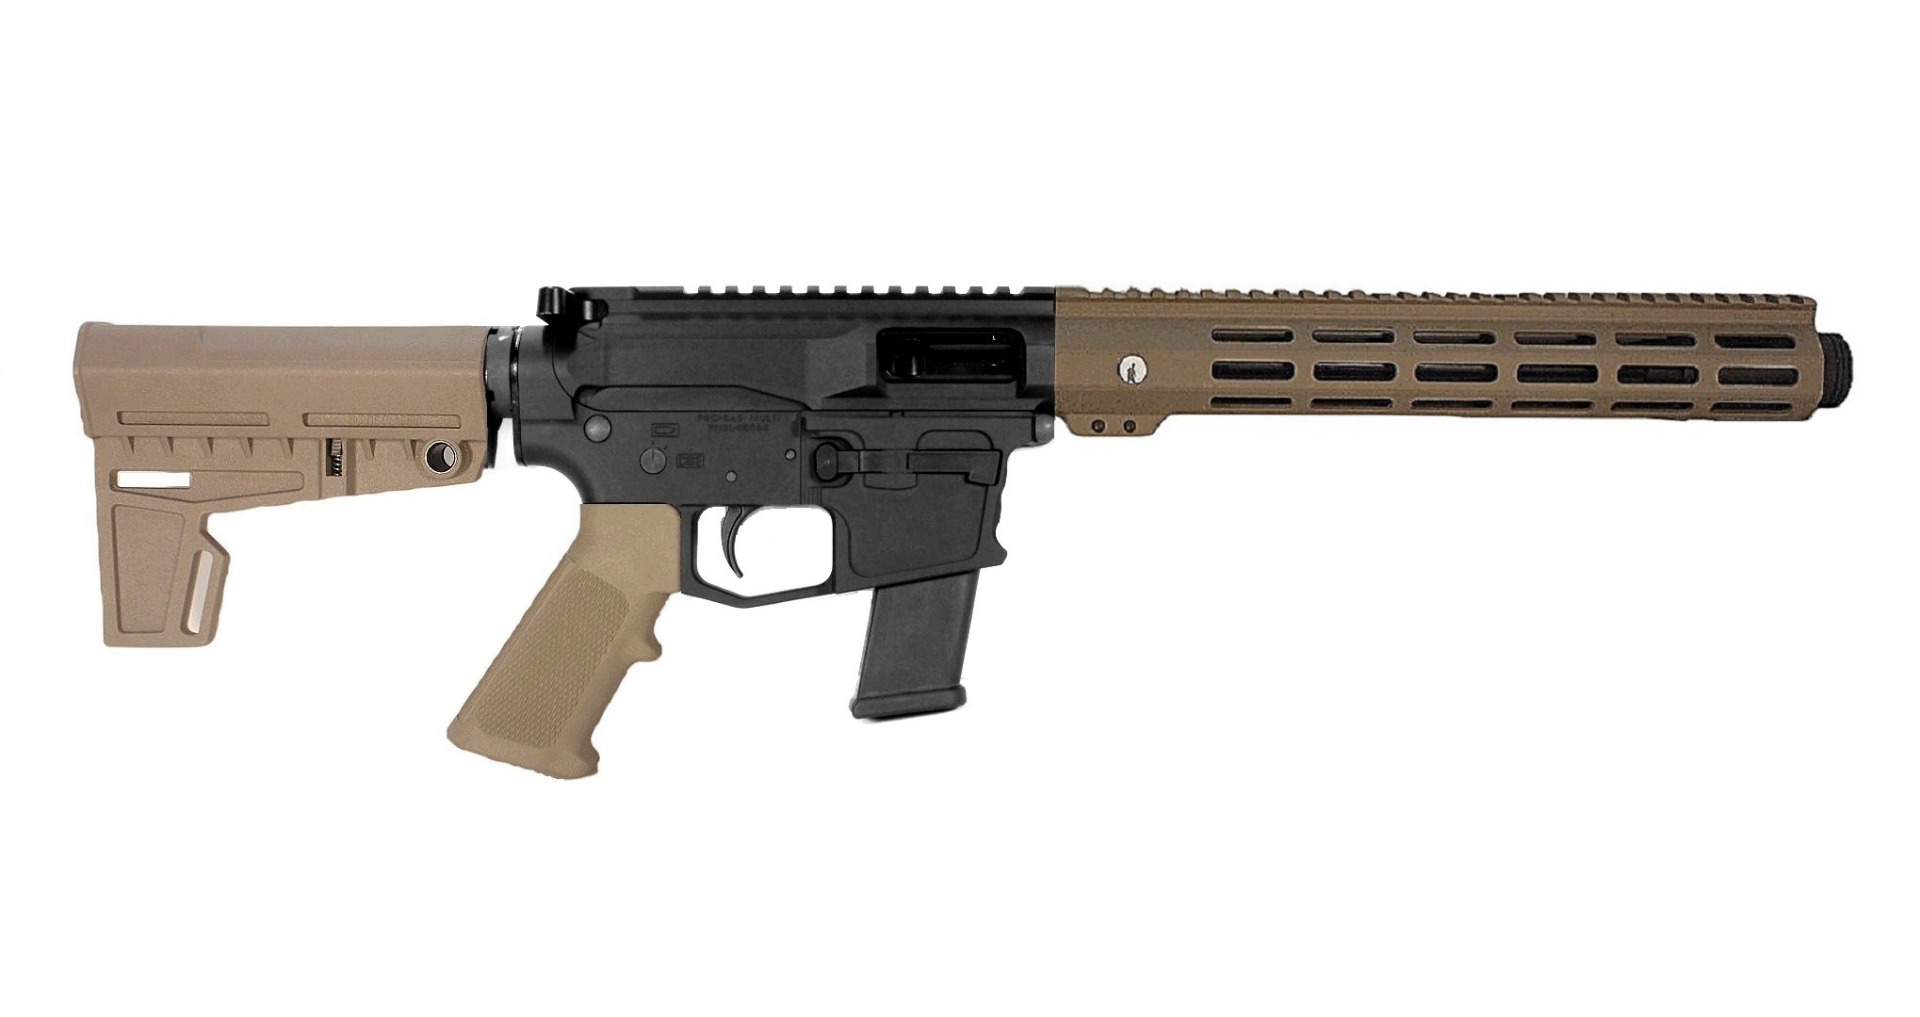 10.5 inch 40 S&W AR15 Pistol in BLK/FDE